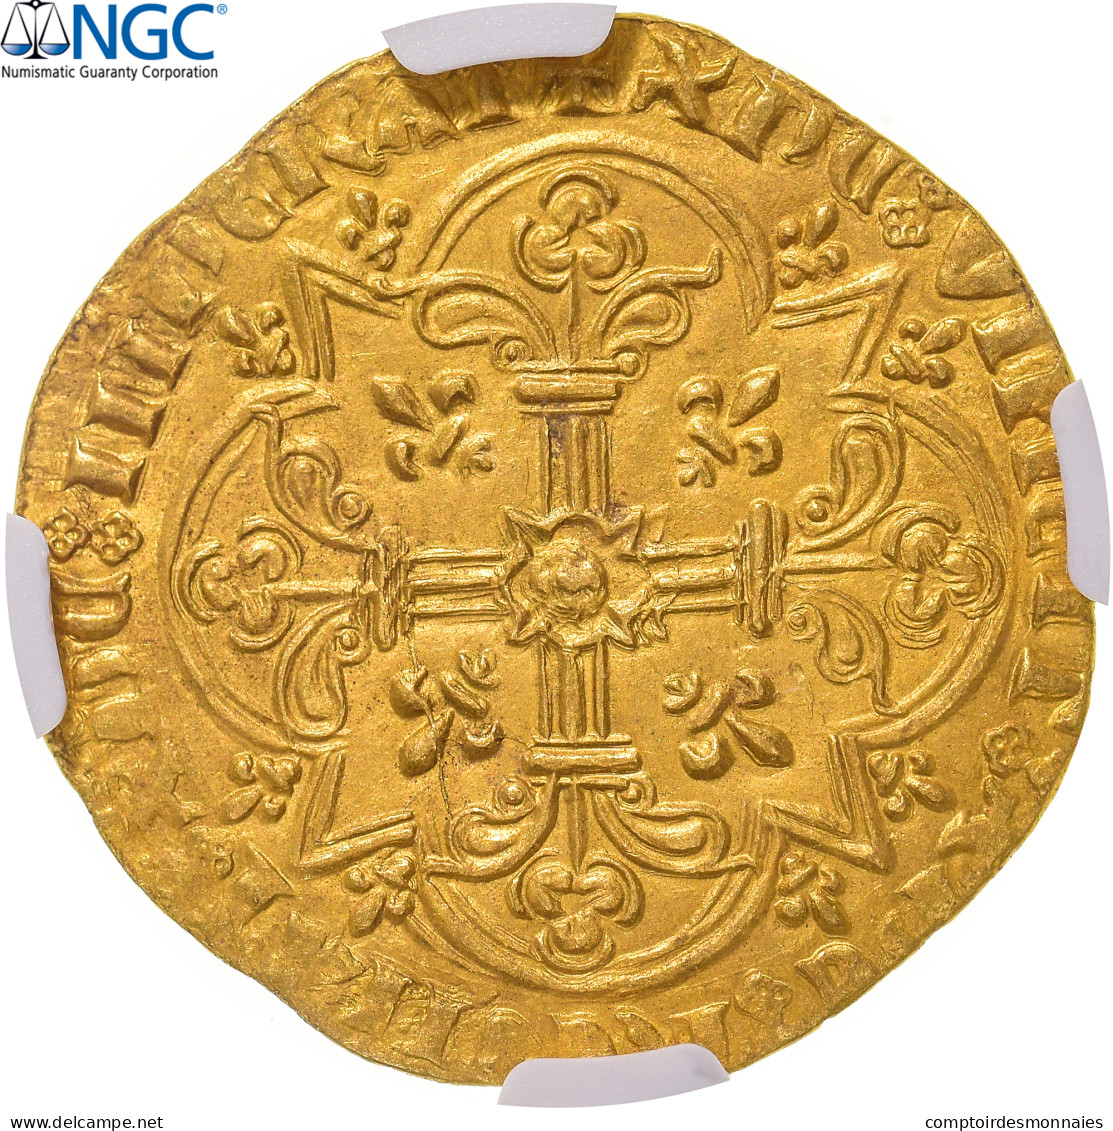 France, Jean II Le Bon, Mouton D'or, 1355, Trésor De Pontivy, Or, NGC, SUP+ - 1350-1364 Juan II El Bueno